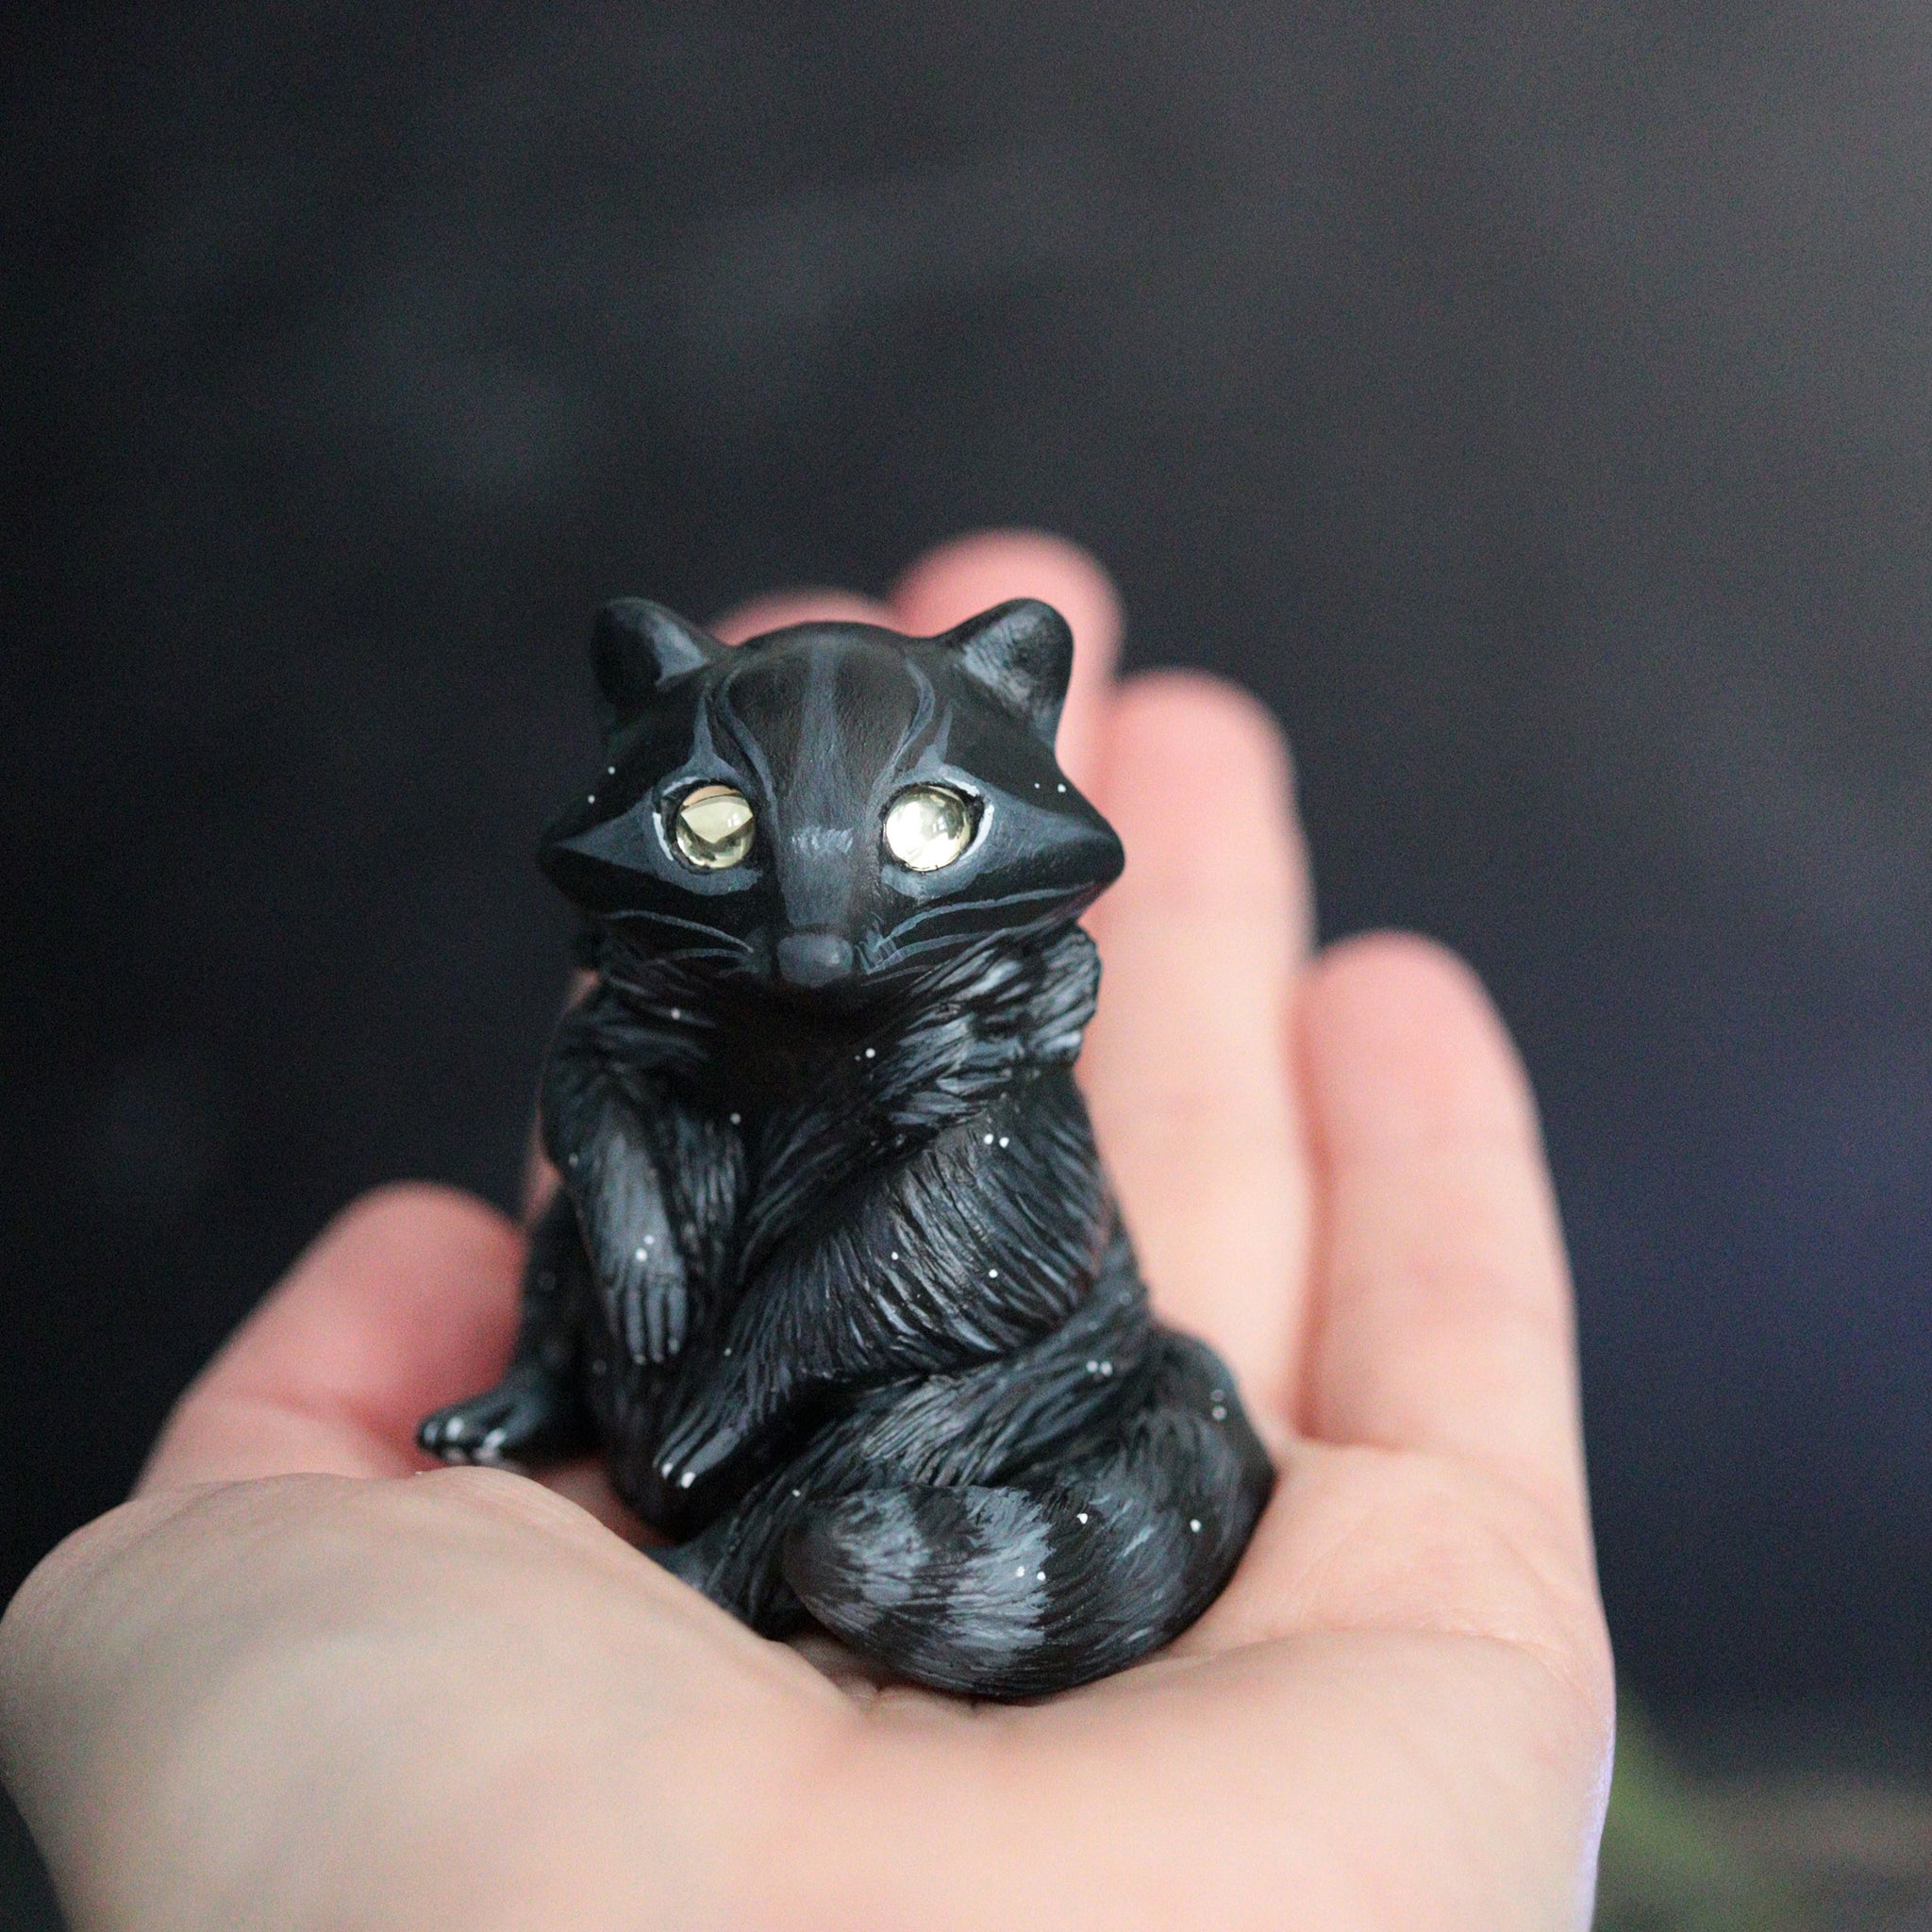 Shadow Raccoon Figurine